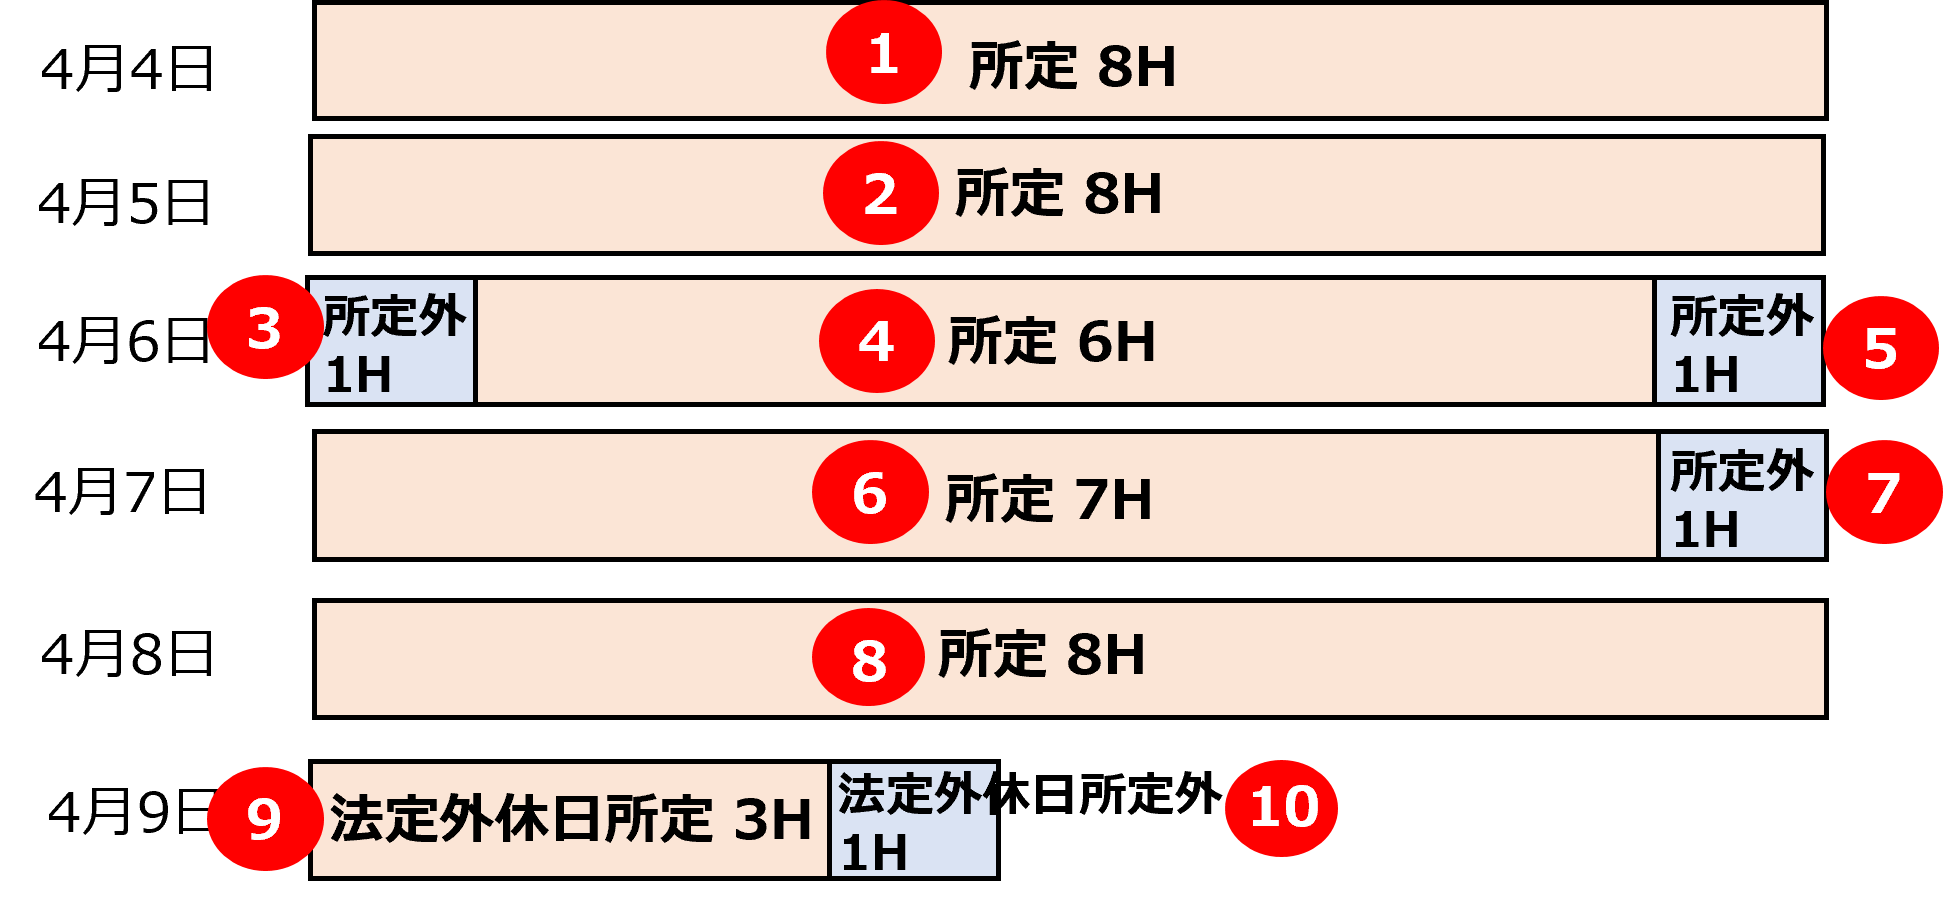 時系列順で計上する場合のイメージ図